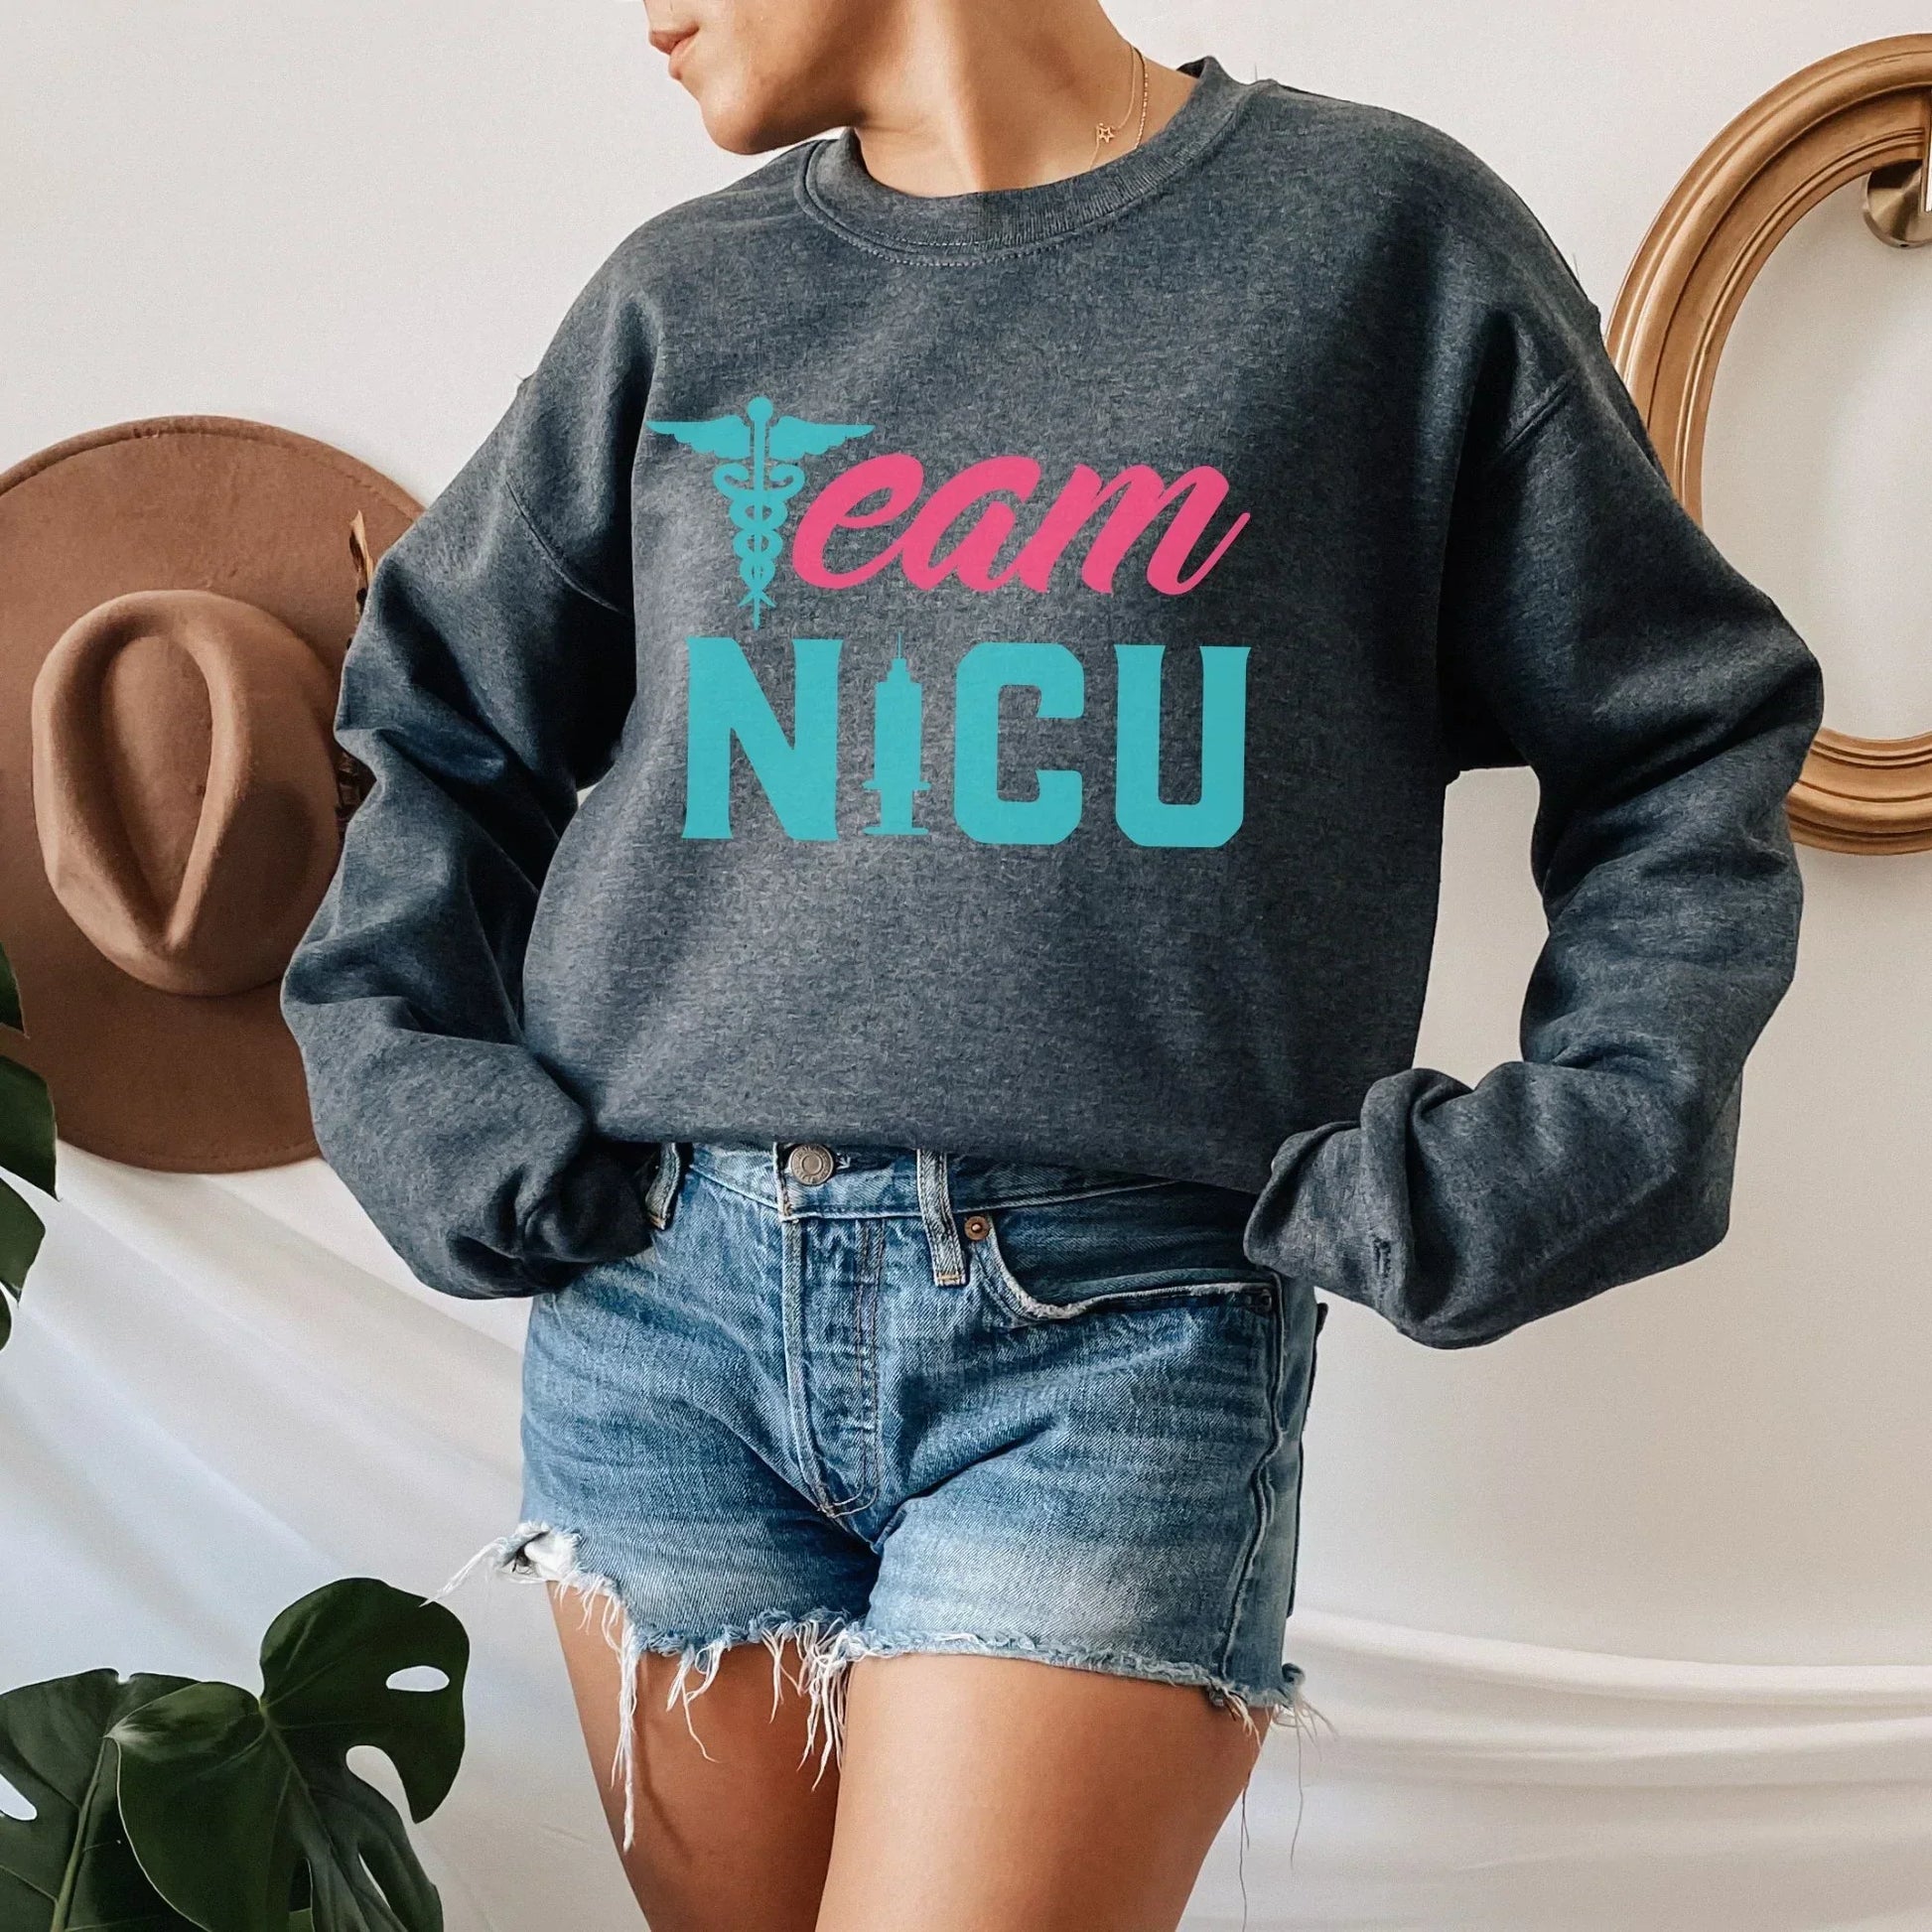 Team NICU Nurse Shirt, Nurse Gift